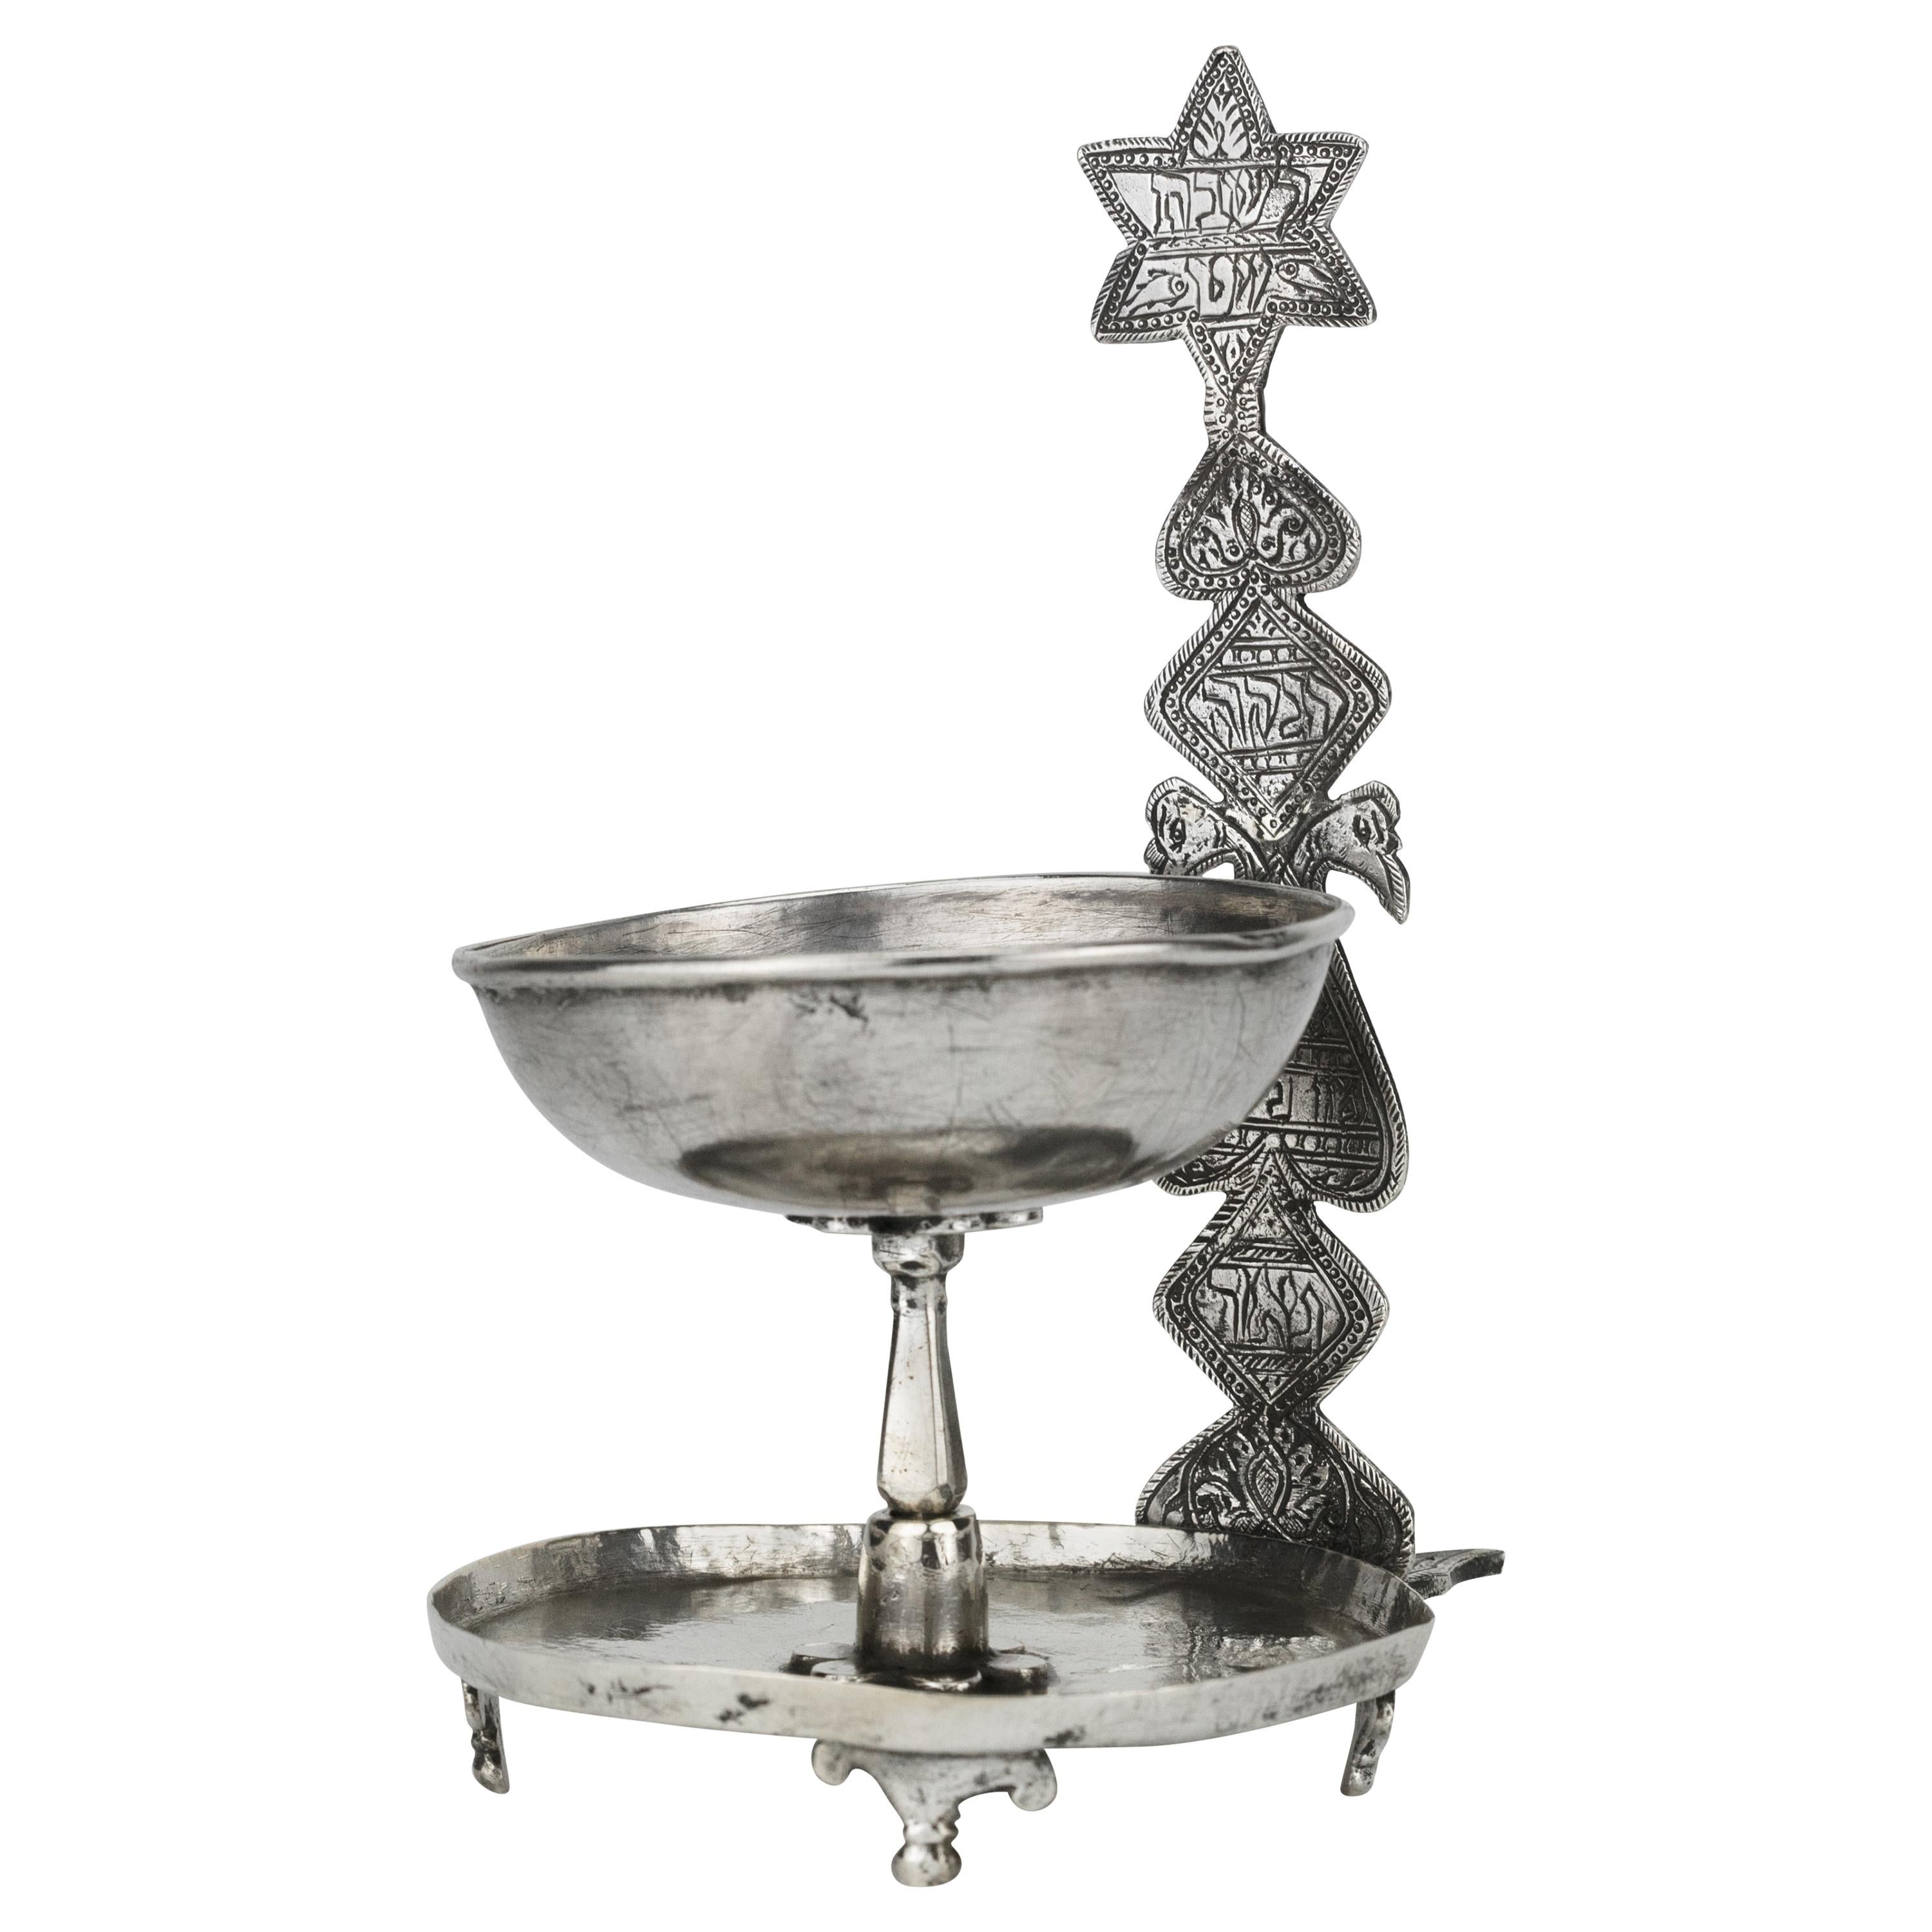 Afghanische Shabbat-Öllampe aus Silber des 19. Jahrhunderts